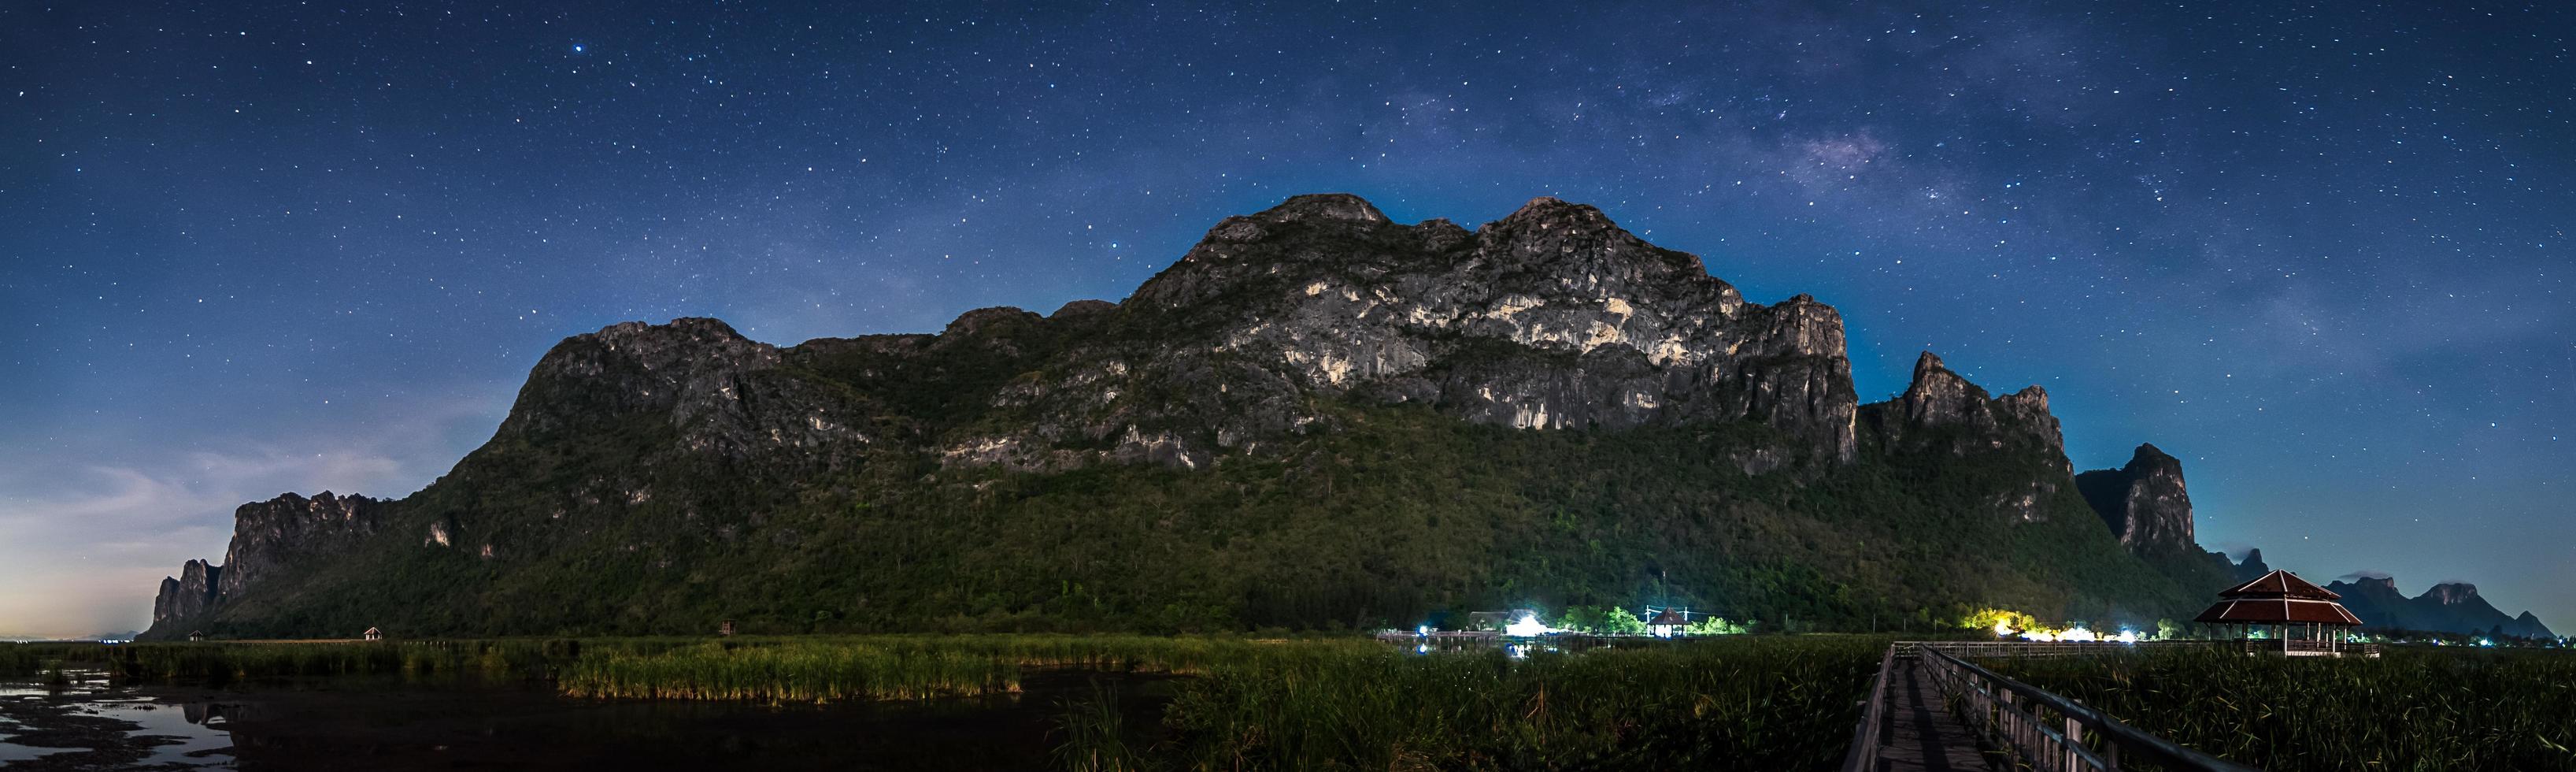 latteo modo galassia e stelle nel notte cielo a partire dal khao sam roi yod nazionale parco, Tailandia foto